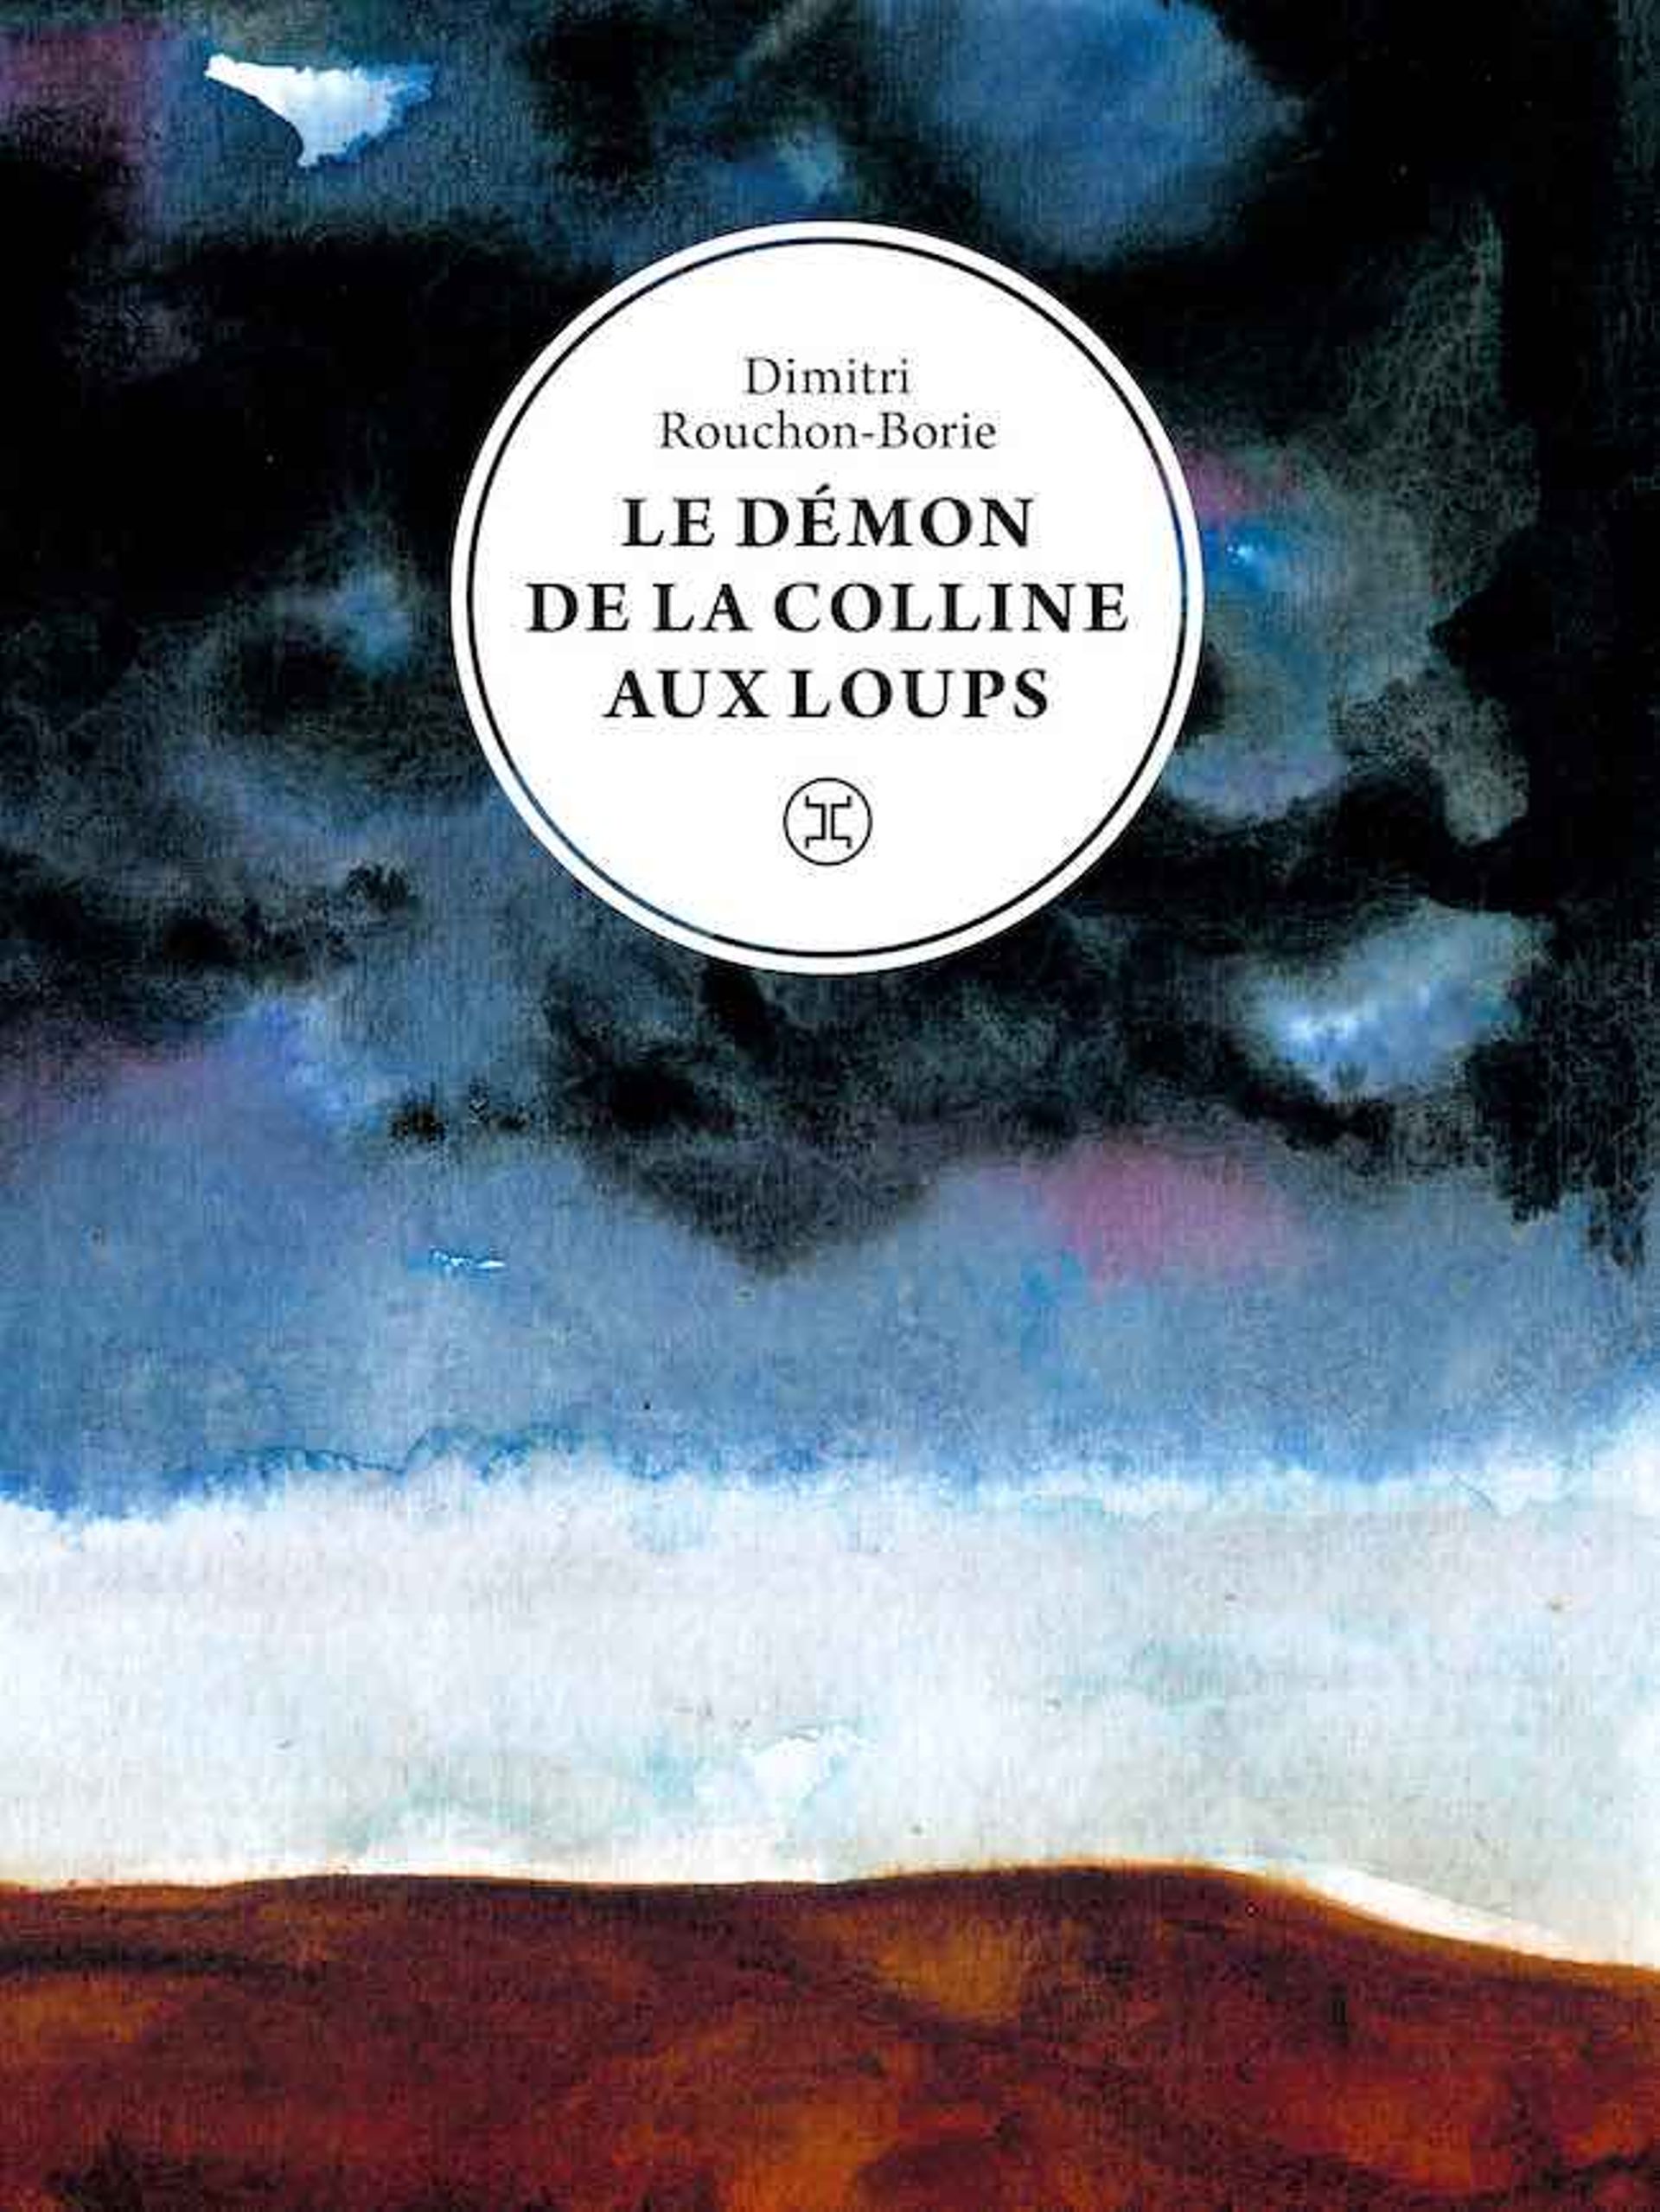 Dimitri Rouchon-Borie, "Le démon de la colline aux loups "